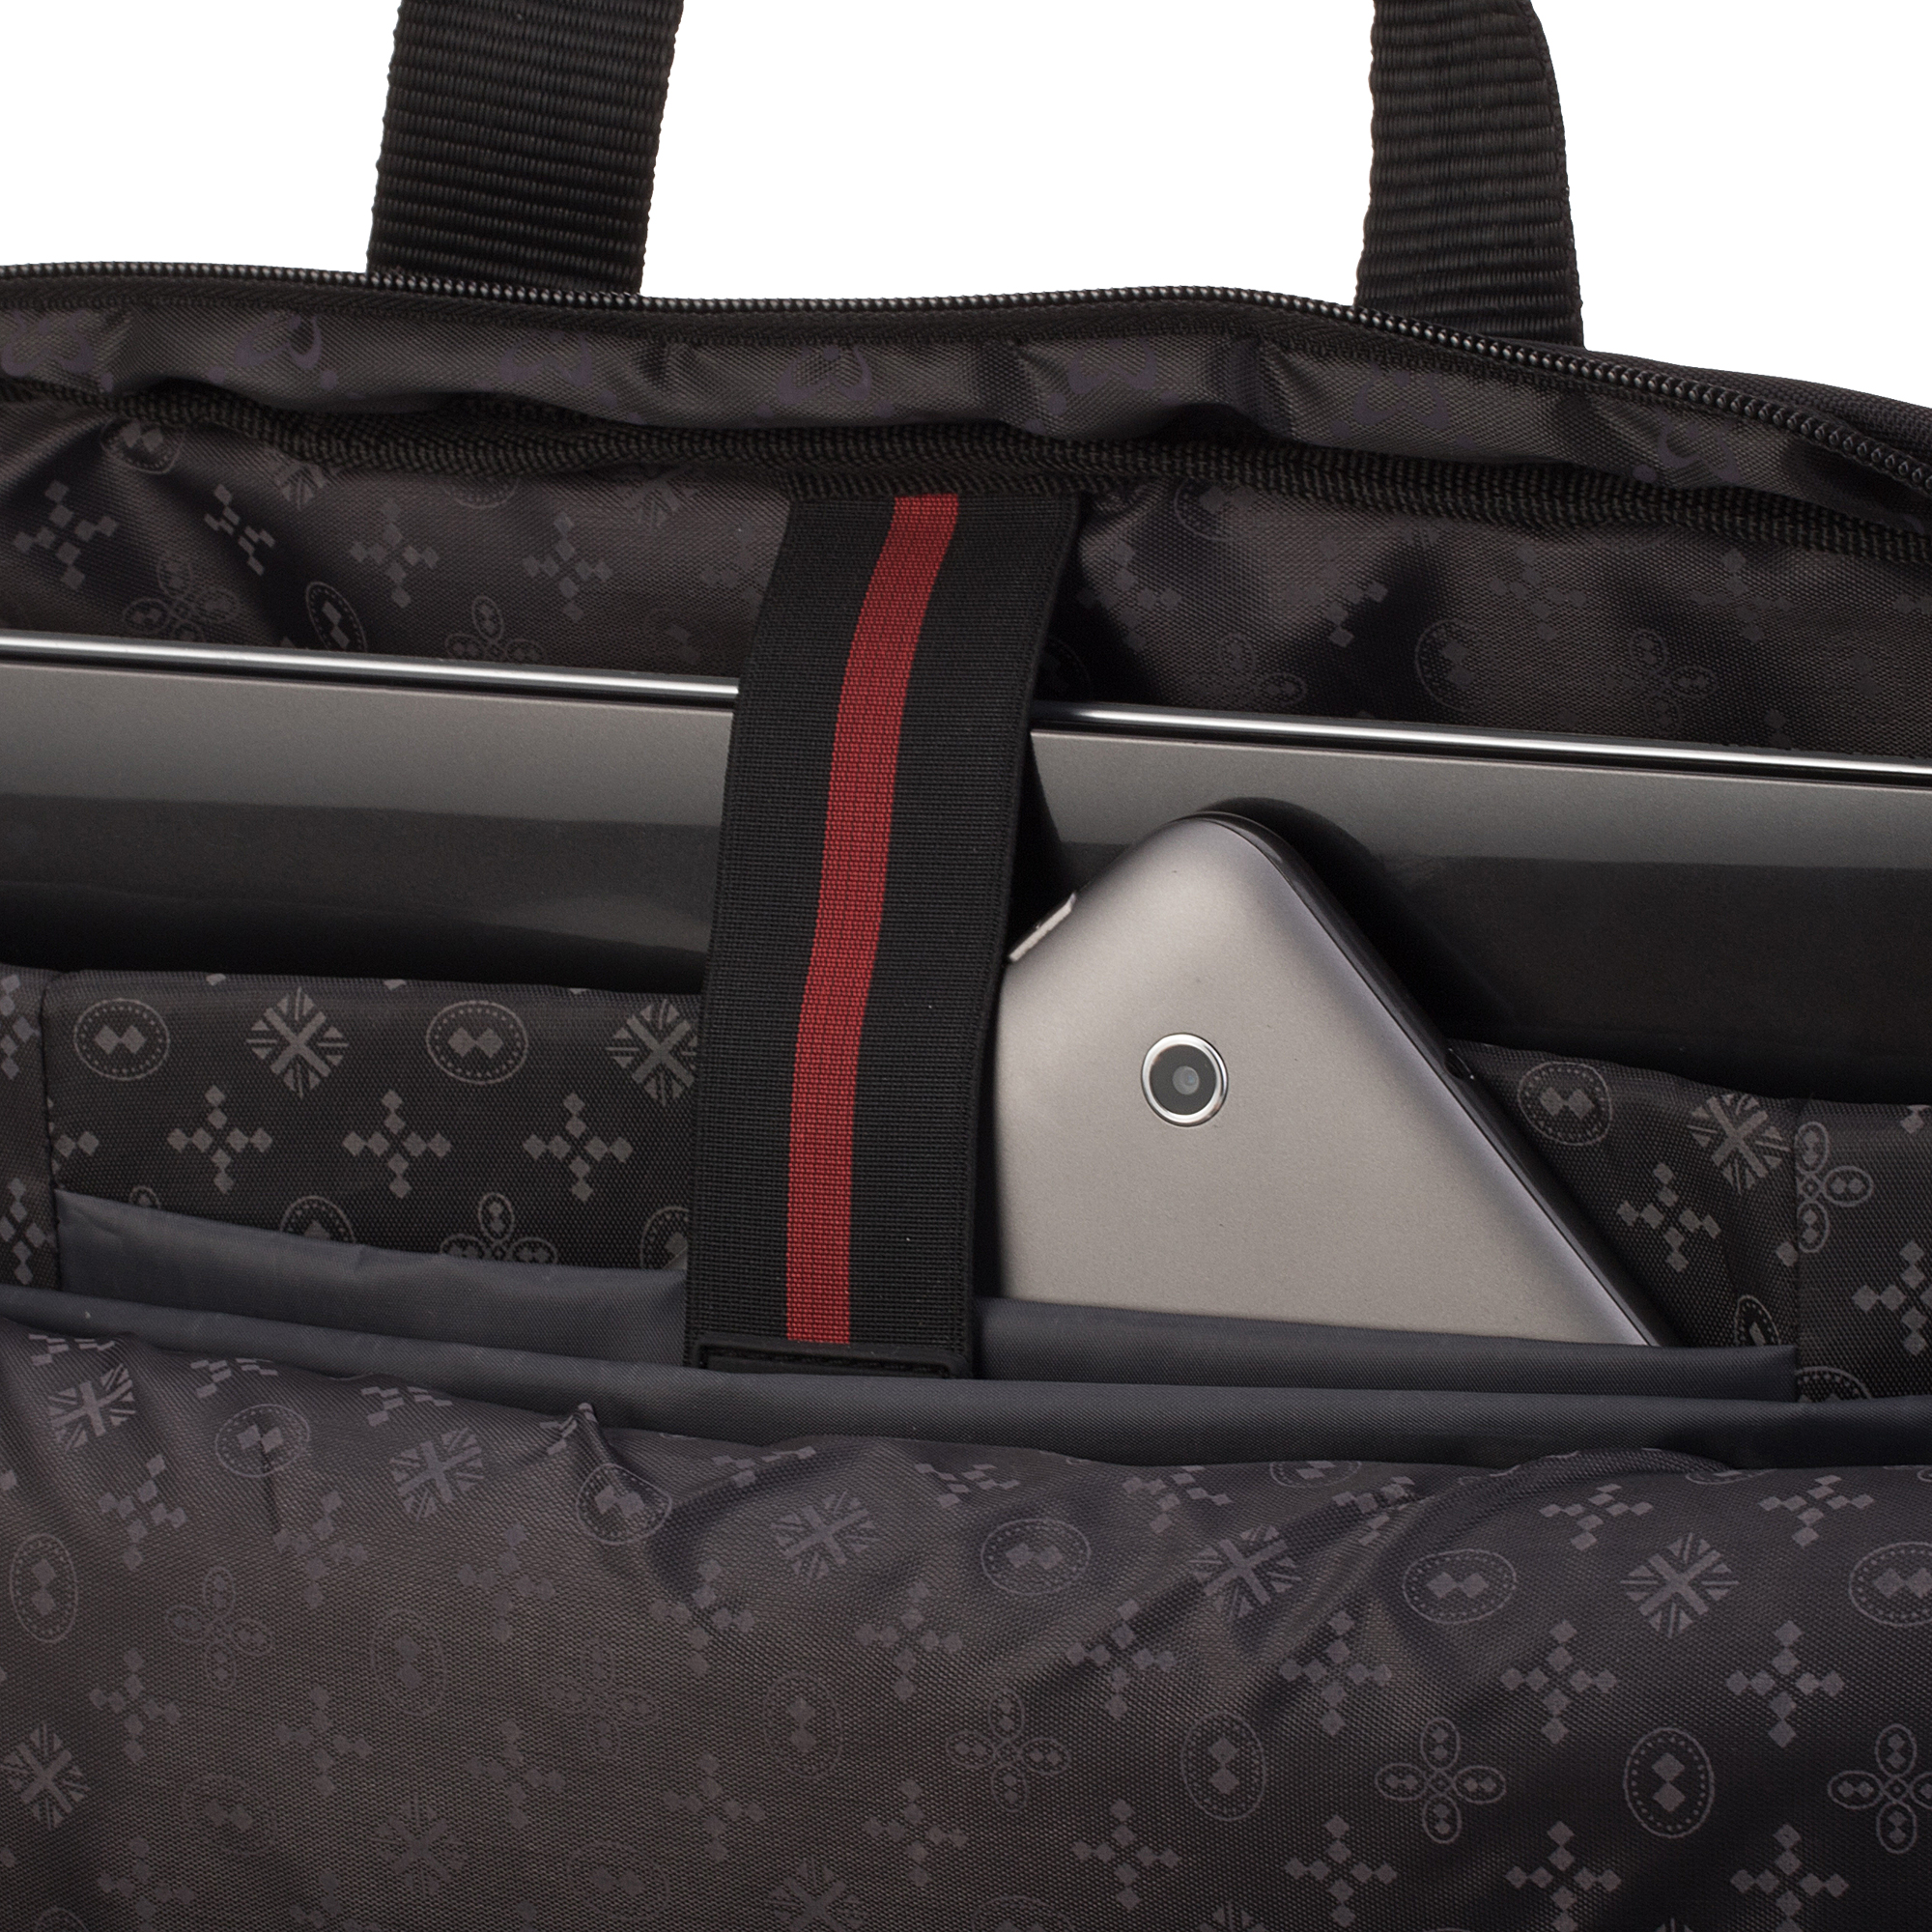 نمای داخل کیف لپ تاپ | آنچه باید در مورد کیف ها بدانیم | فروشگاه کیف و کوله پشتی تنسر